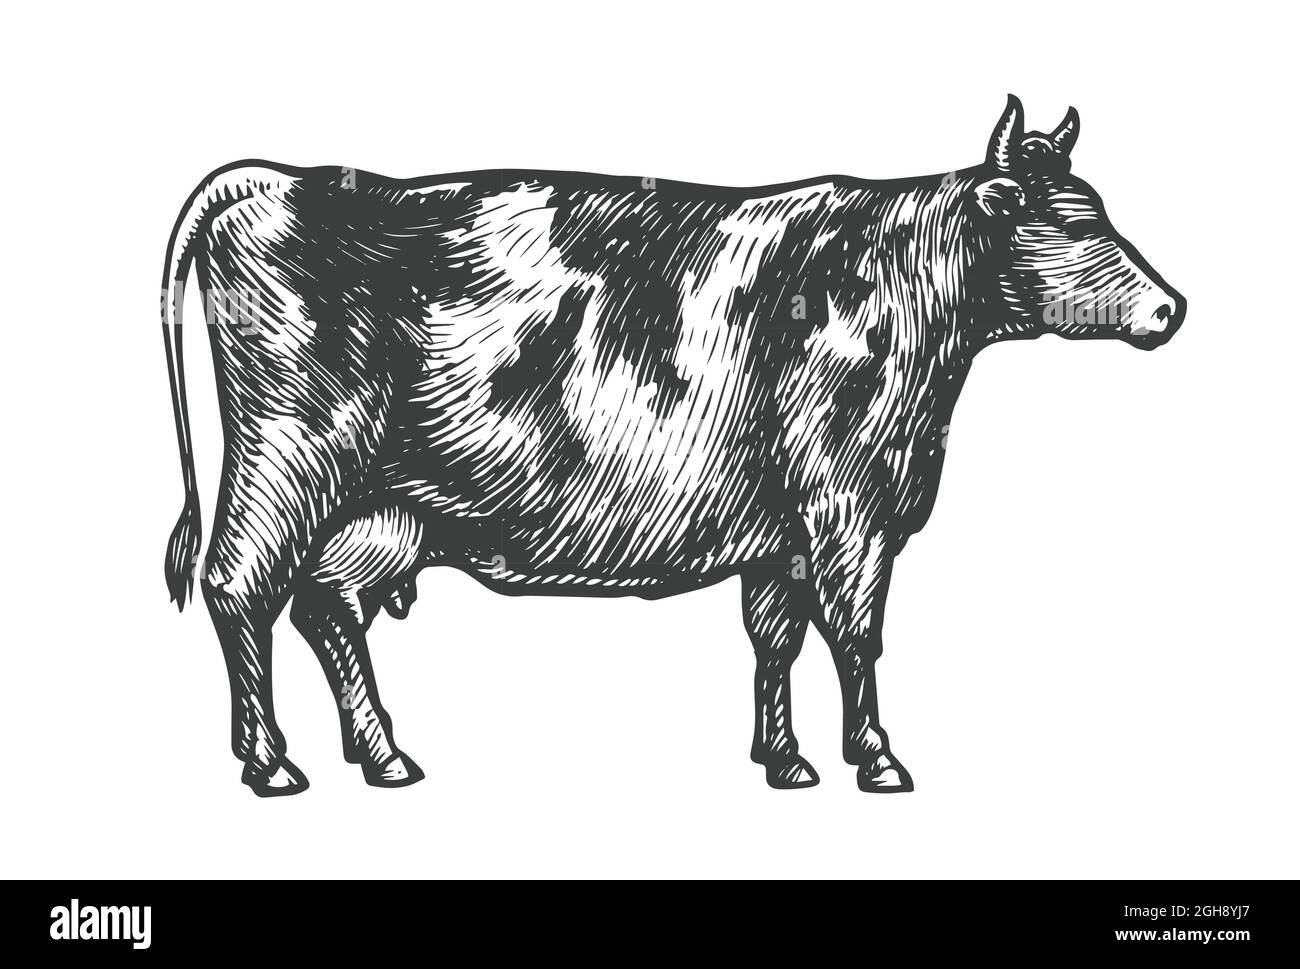 Handgezeichnete Skizze einer Kuh. Vieh, Vieh, Tiere grasen Vektor-Illustration Stock Vektor